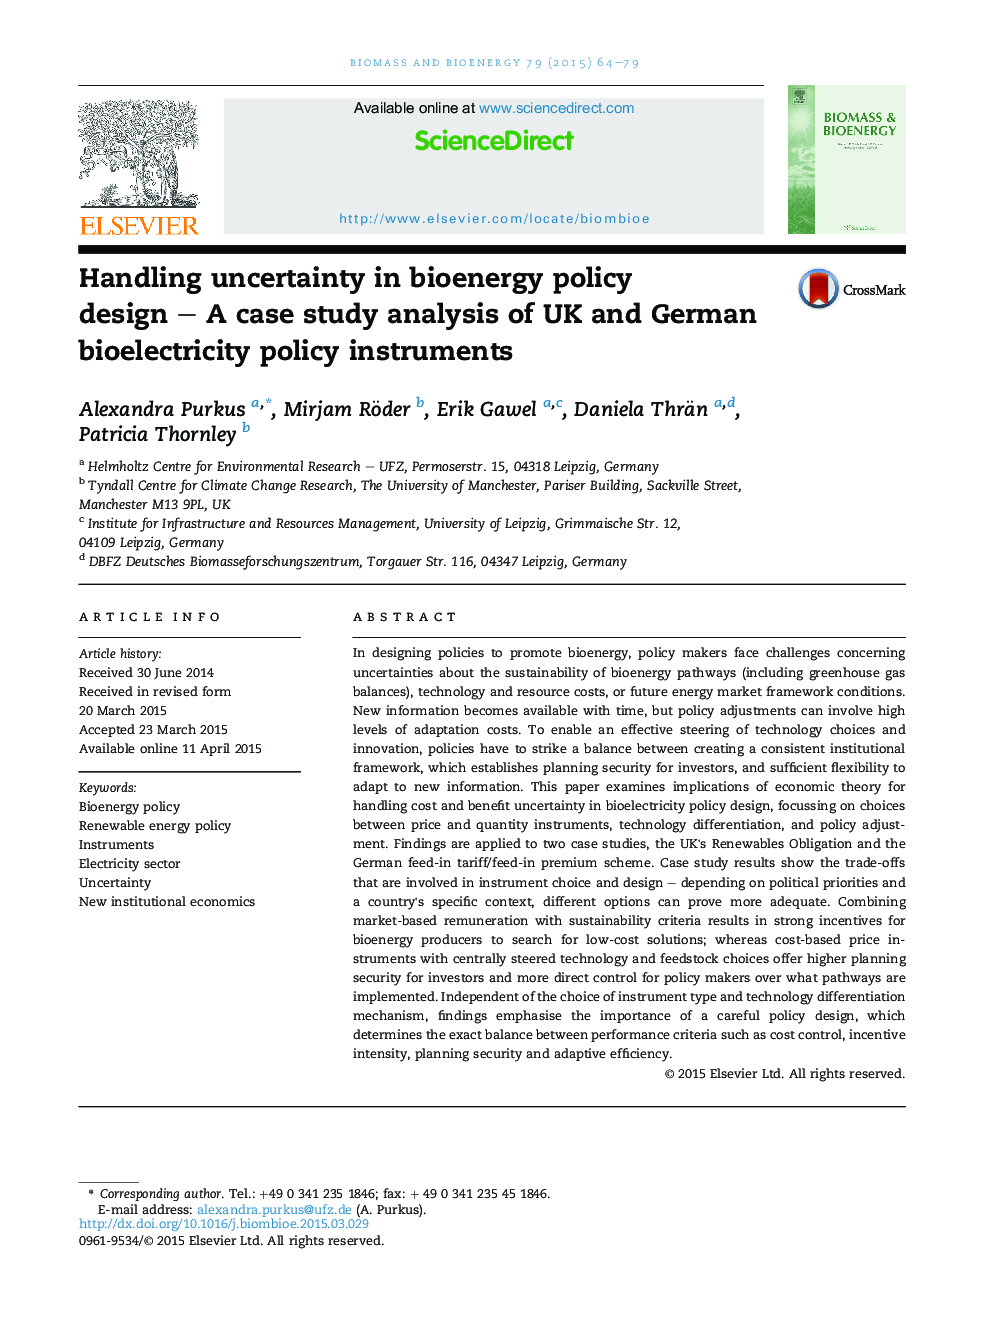 عدم اطمینان در طراحی سیاست های زیست محیطی - یک تحلیل مورد مطالعه ابزارهای سیاست زیستی الکتریکی بریتانیا و آلمان 